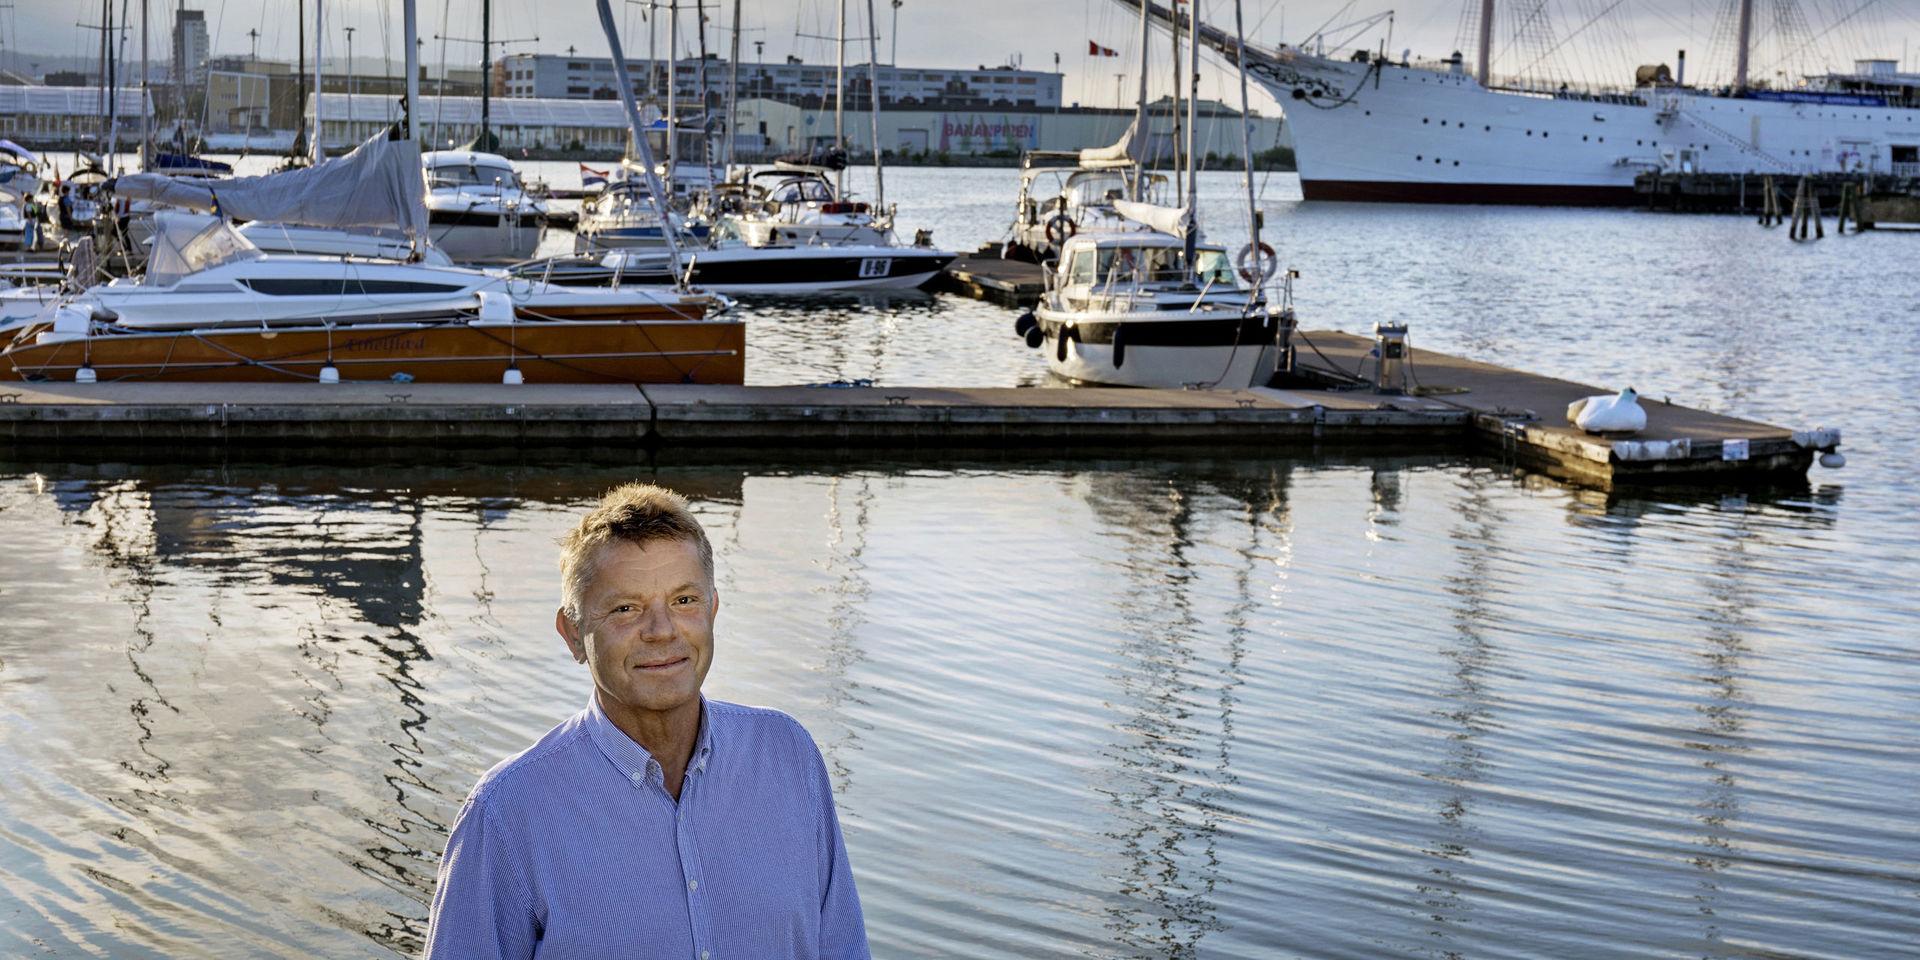 Roy Jaan är hemma i Göteborg igen efter den dramatiska seglatsen där han hamnade i sjönöd ute på Atlanten och till sist tvingades överge sin båt. Och han är medveten om att det inte är riskfritt med långseglingar. &quot;Jag visste att detta kunde hända&quot;, konstaterar han.